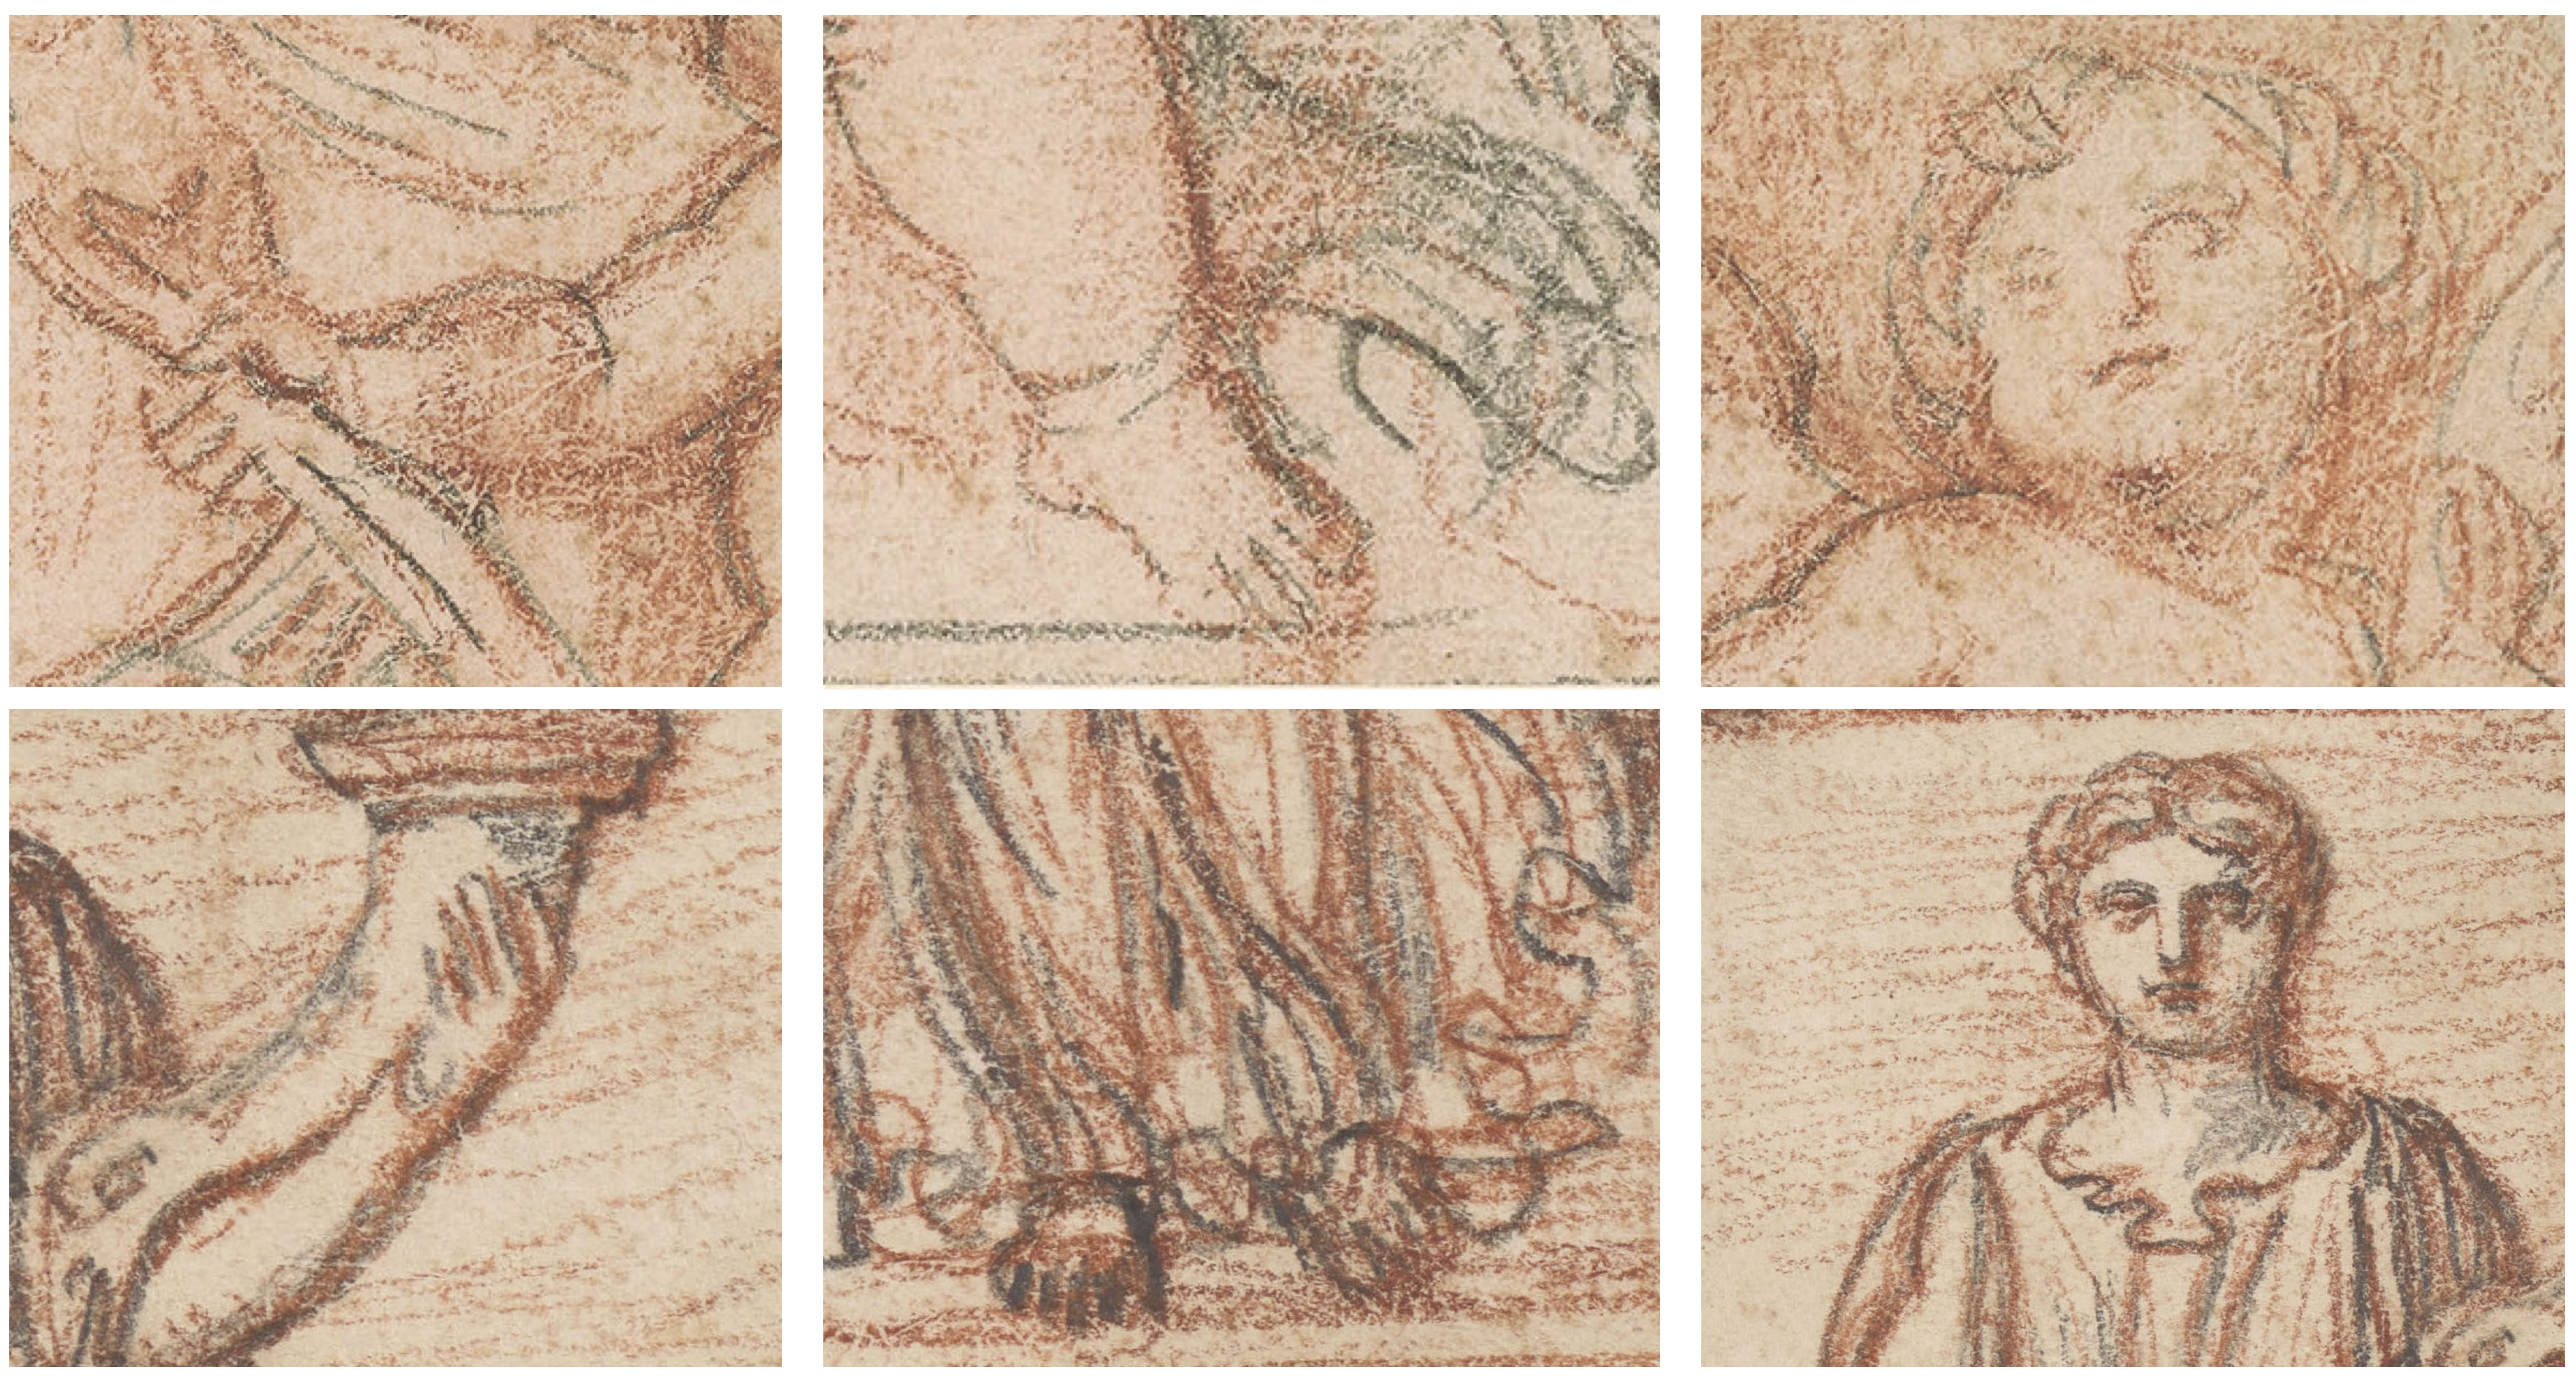 Sechs verschiedene Piranesi-Zeichnungen zum Vergleich. 